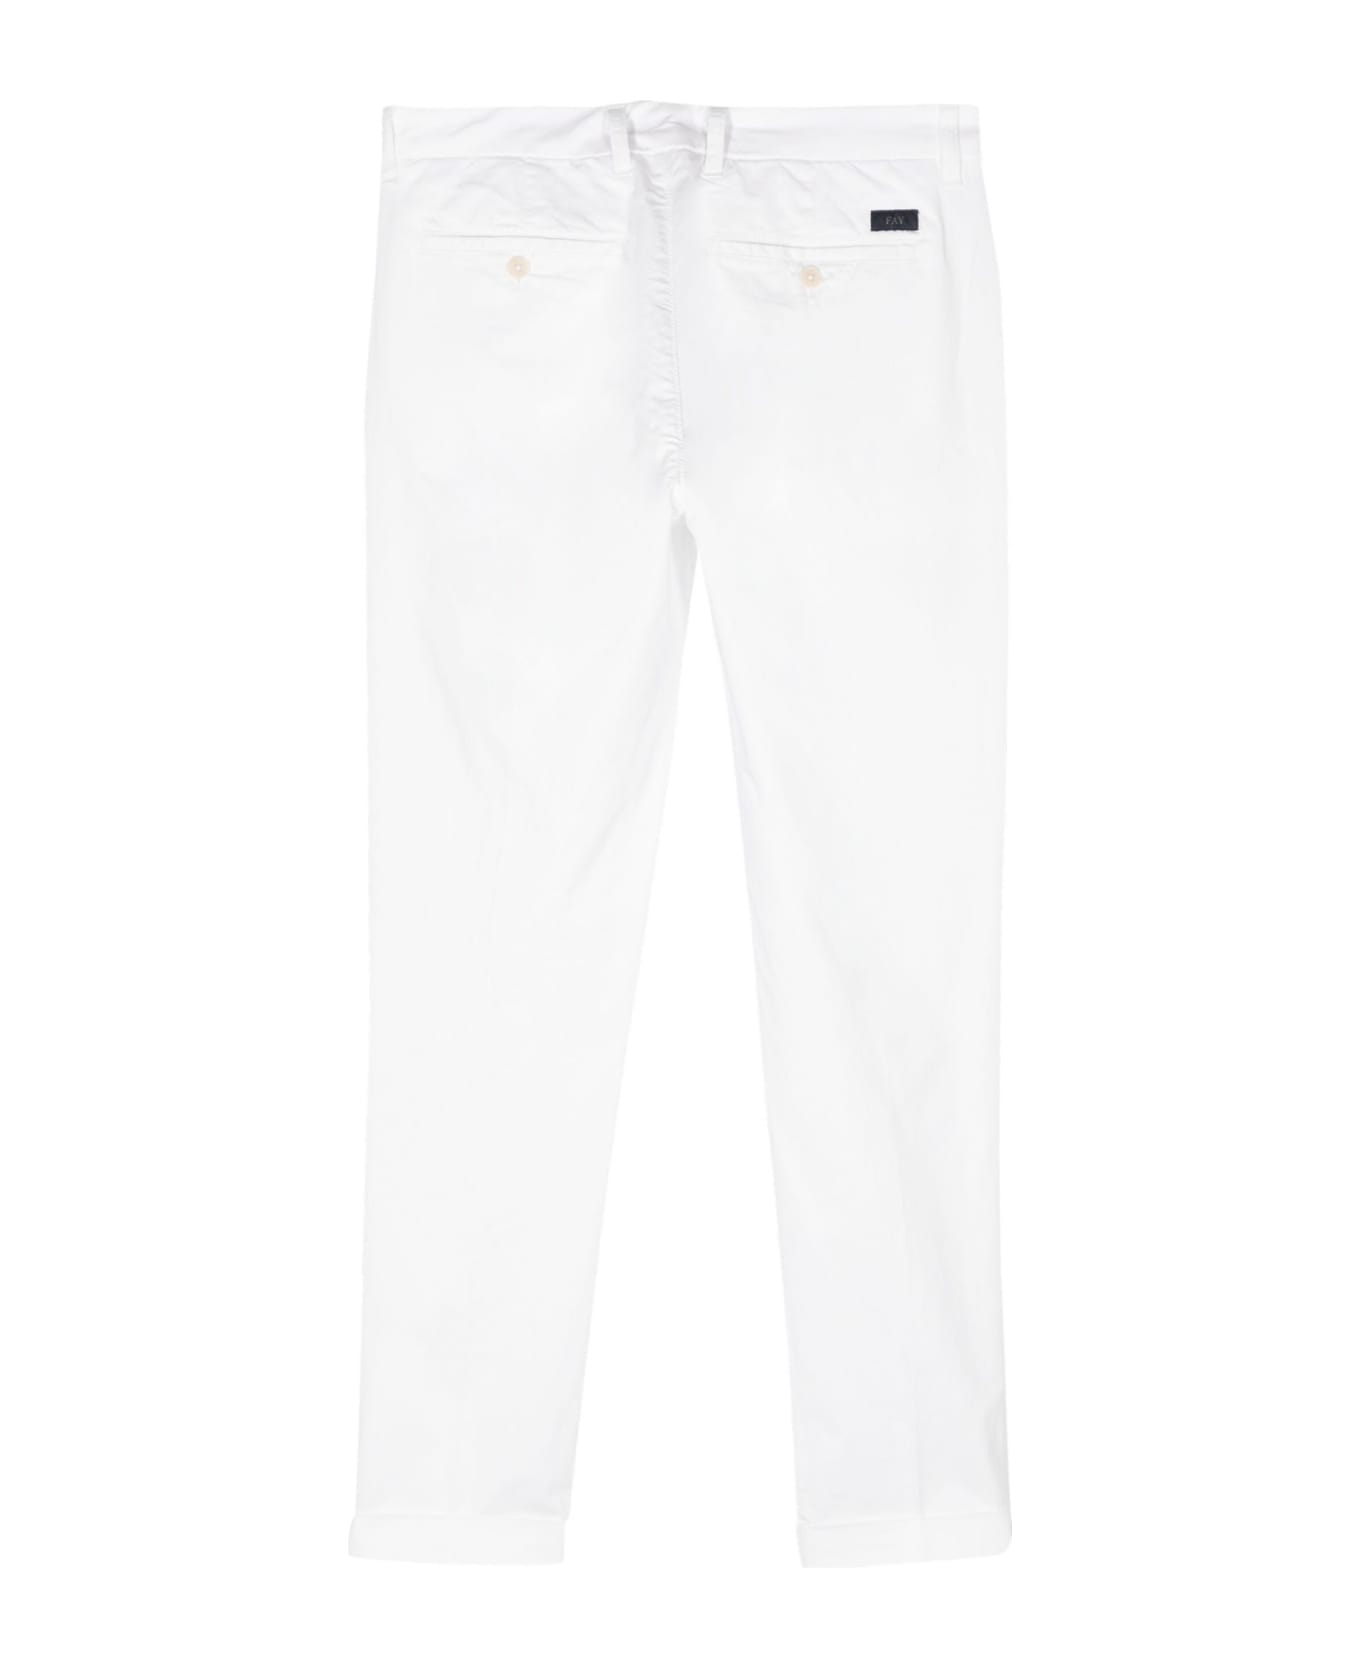 Fay Classic Capri Pants - White